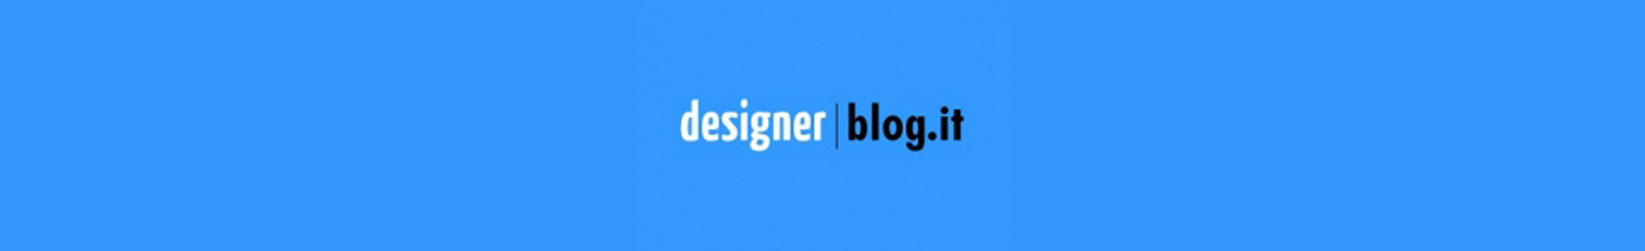 designer blog